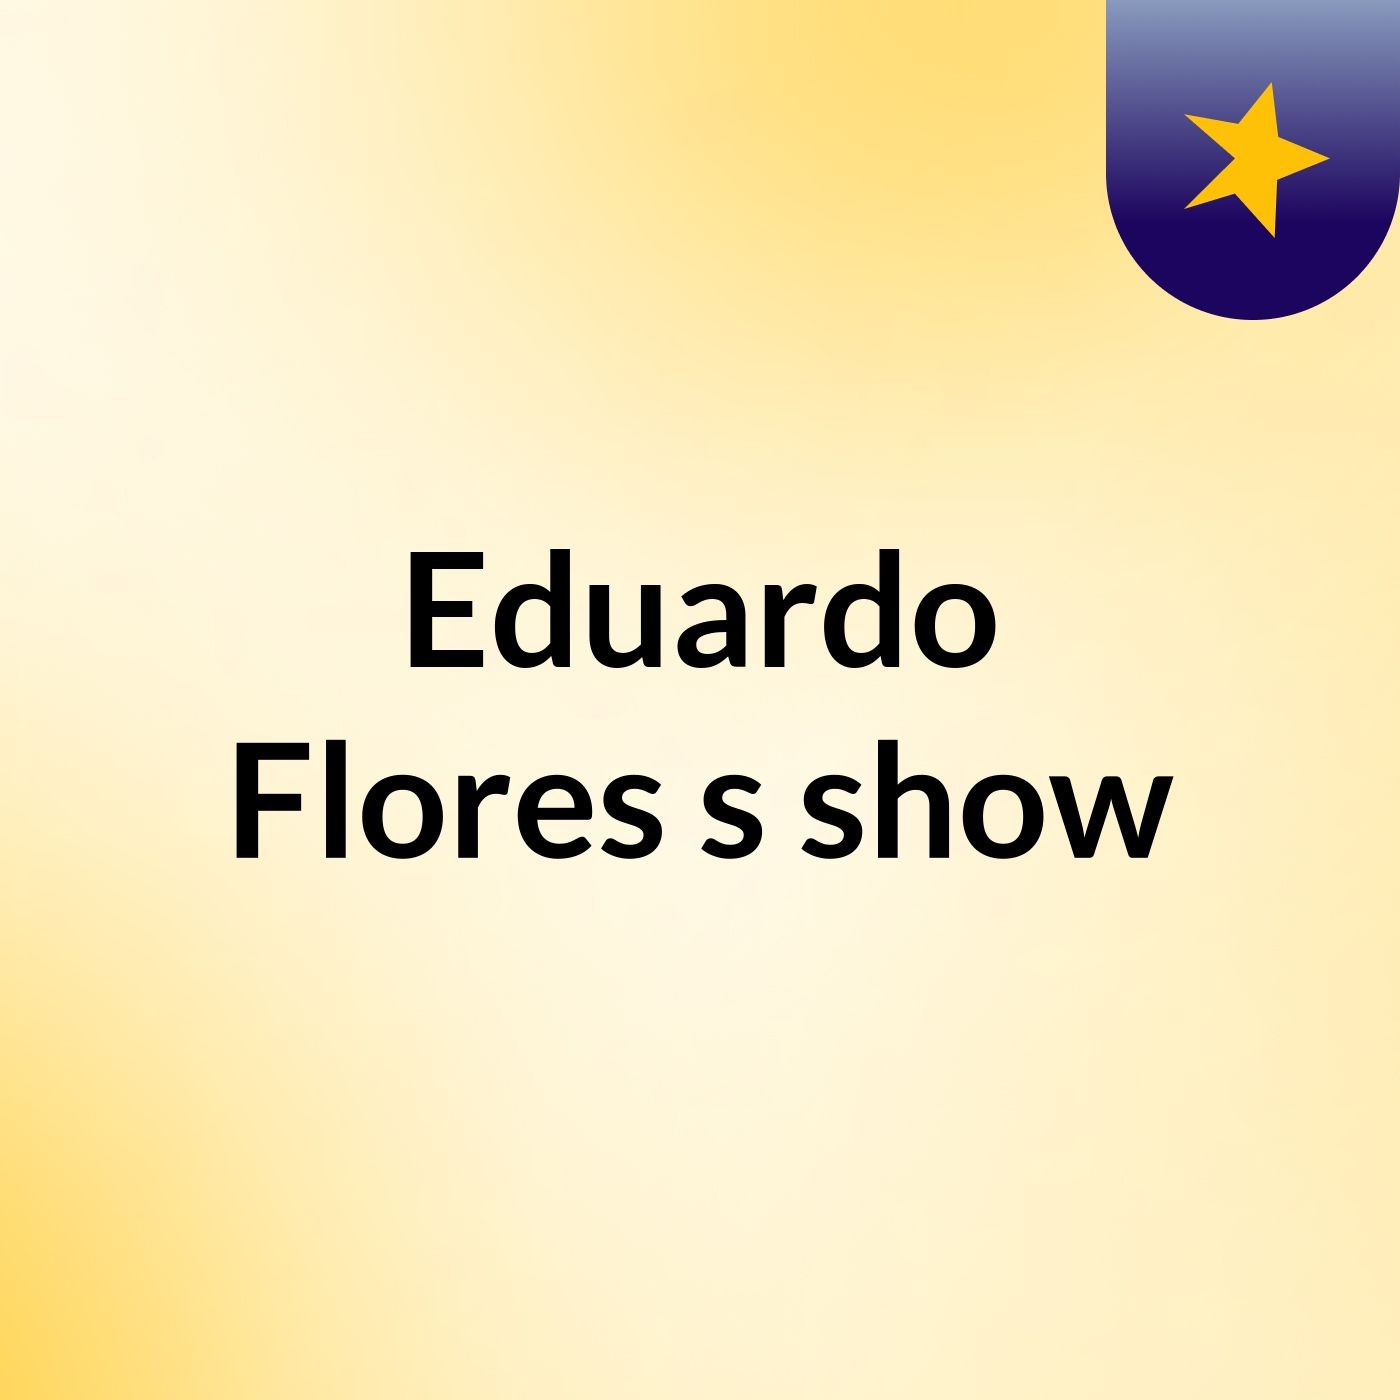 Eduardo Flores's show